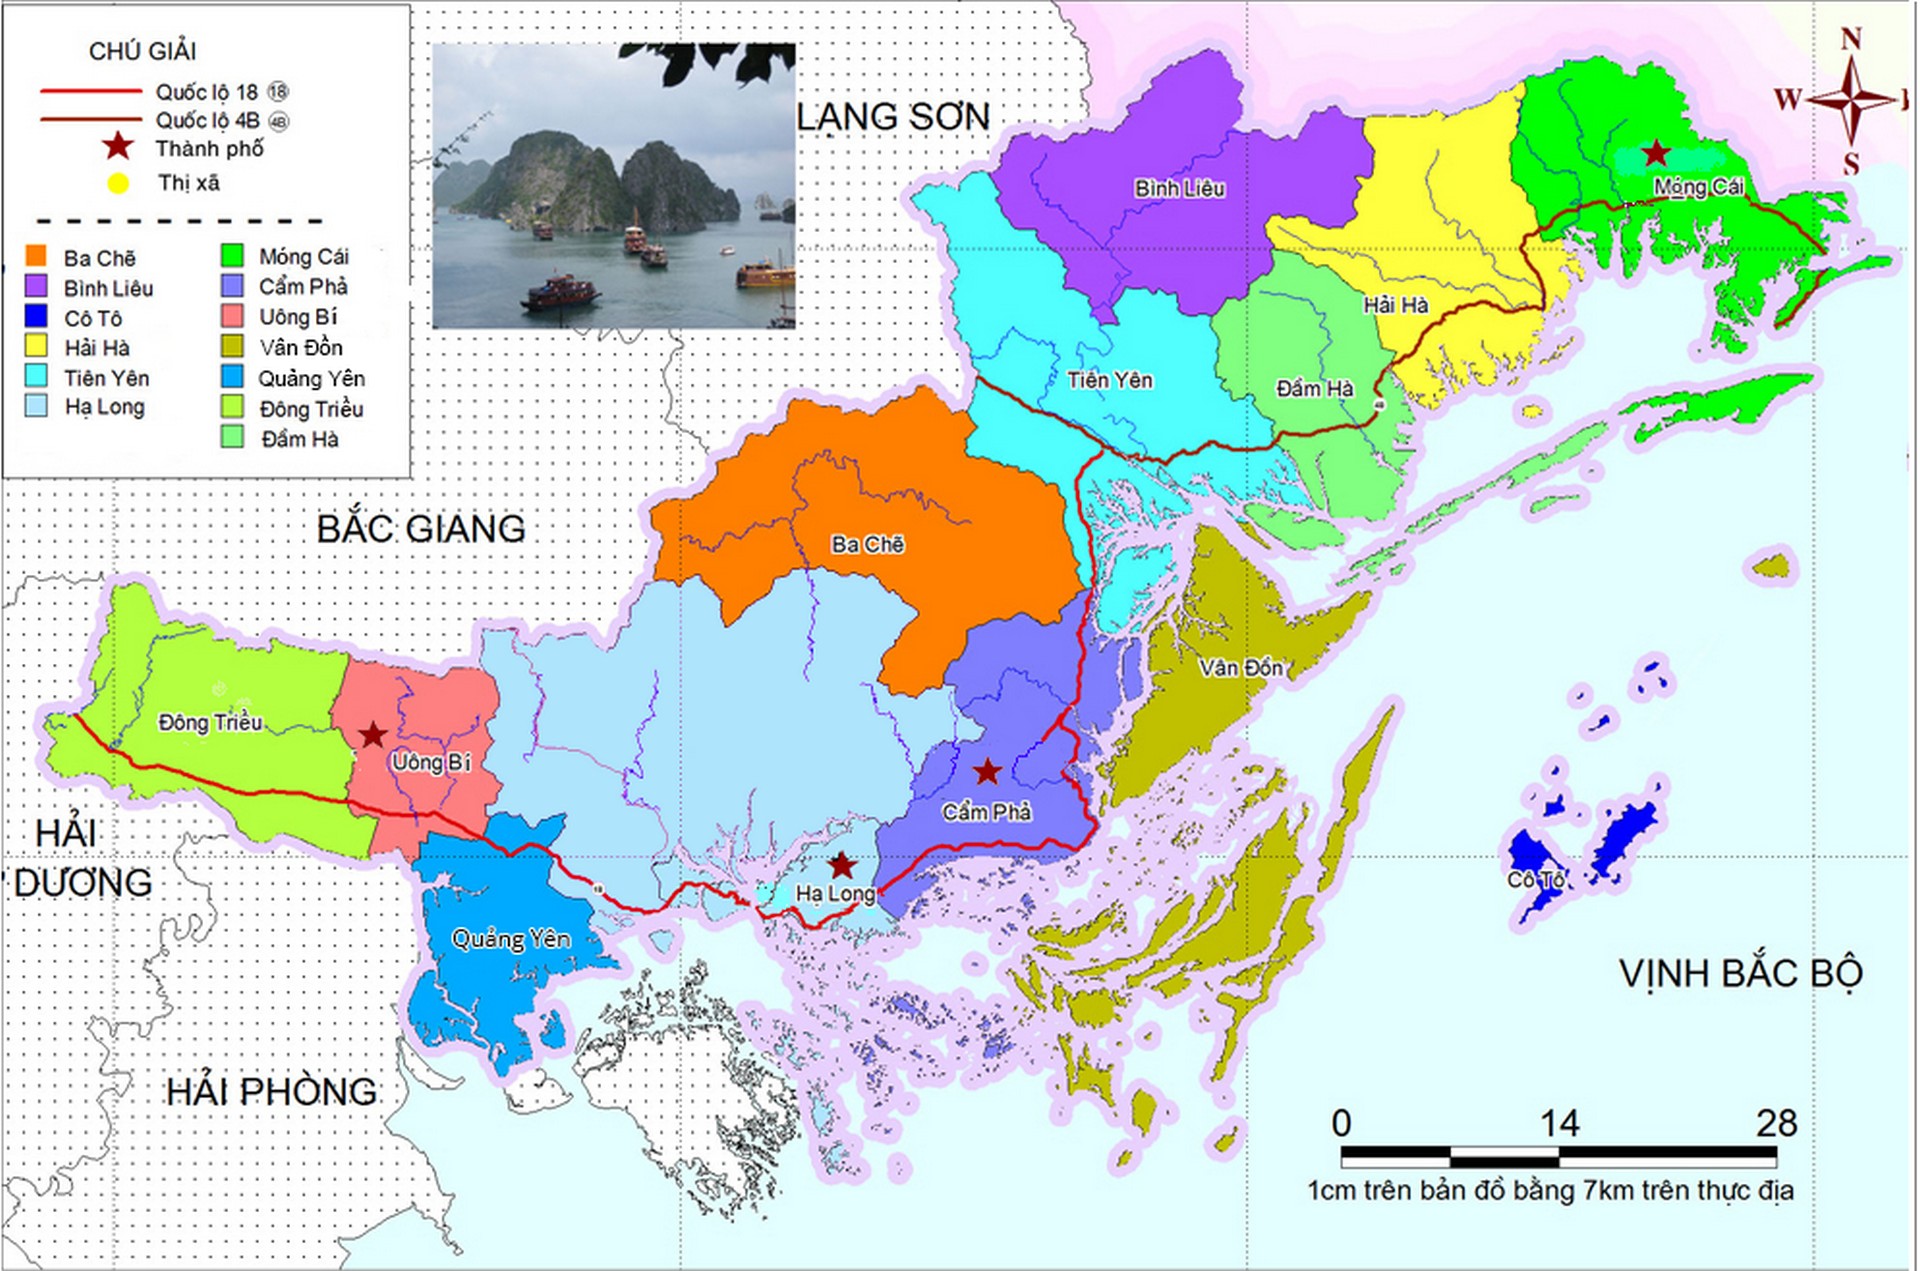 Khám phá Quảng Ninh của năm 2024 thông qua bản đồ địa lý mới nhất. Với hệ thống cập nhật liên tục, bạn sẽ dễ dàng tìm được những địa điểm đẹp nhất, nổi tiếng nhất trong khu vực. Hãy cùng đồng hành với chúng tôi để khám phá vùng đất đầy tiềm năng này.